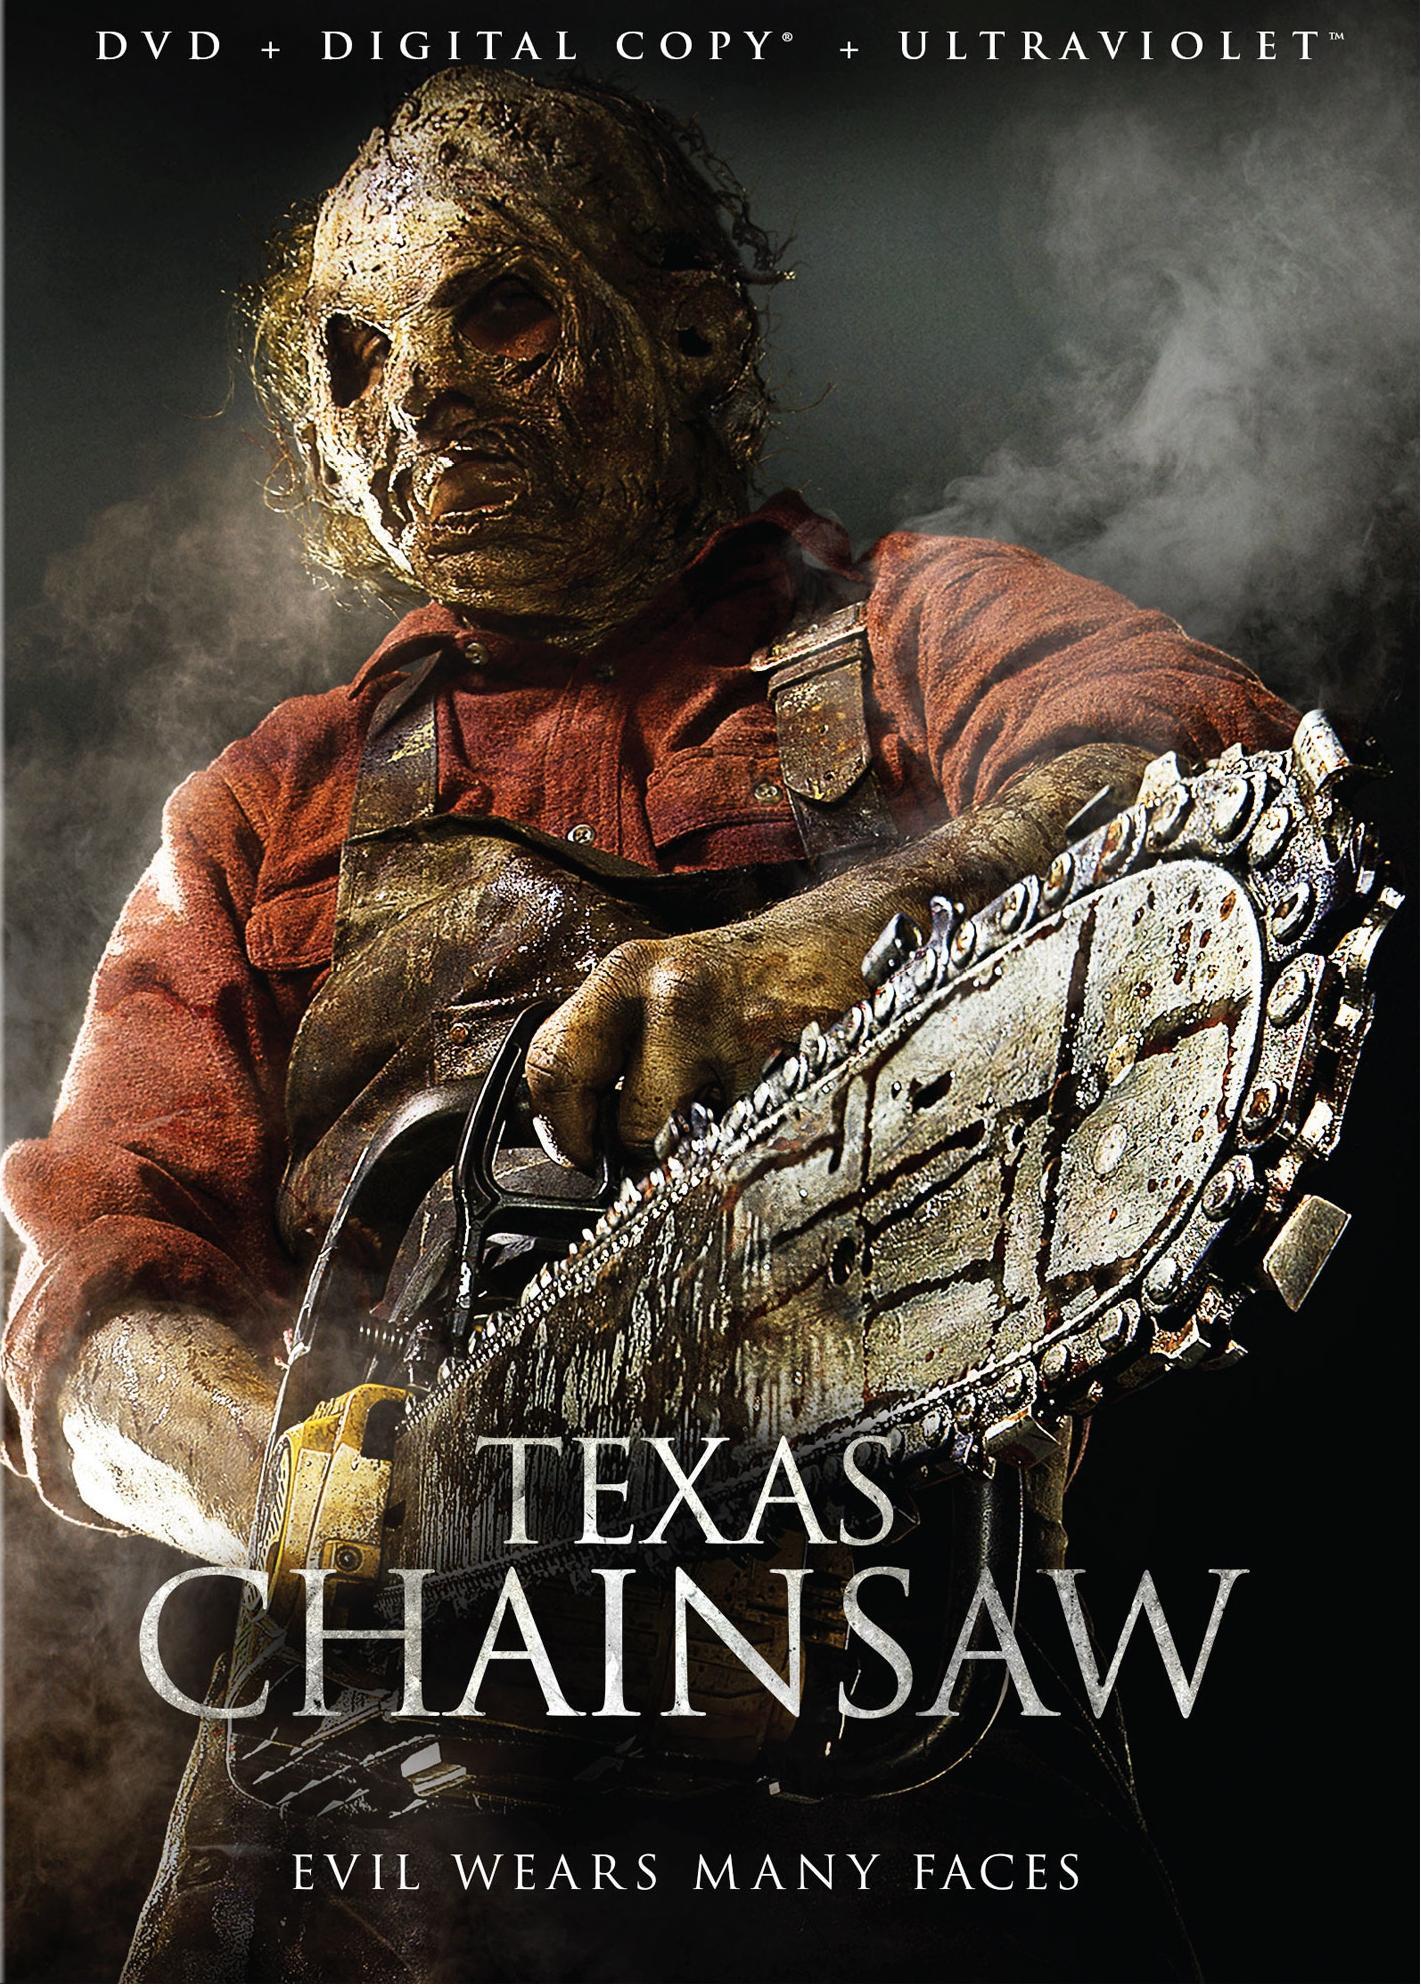 Постер фильма Техасская резня бензопилой | Texas Chainsaw 3D